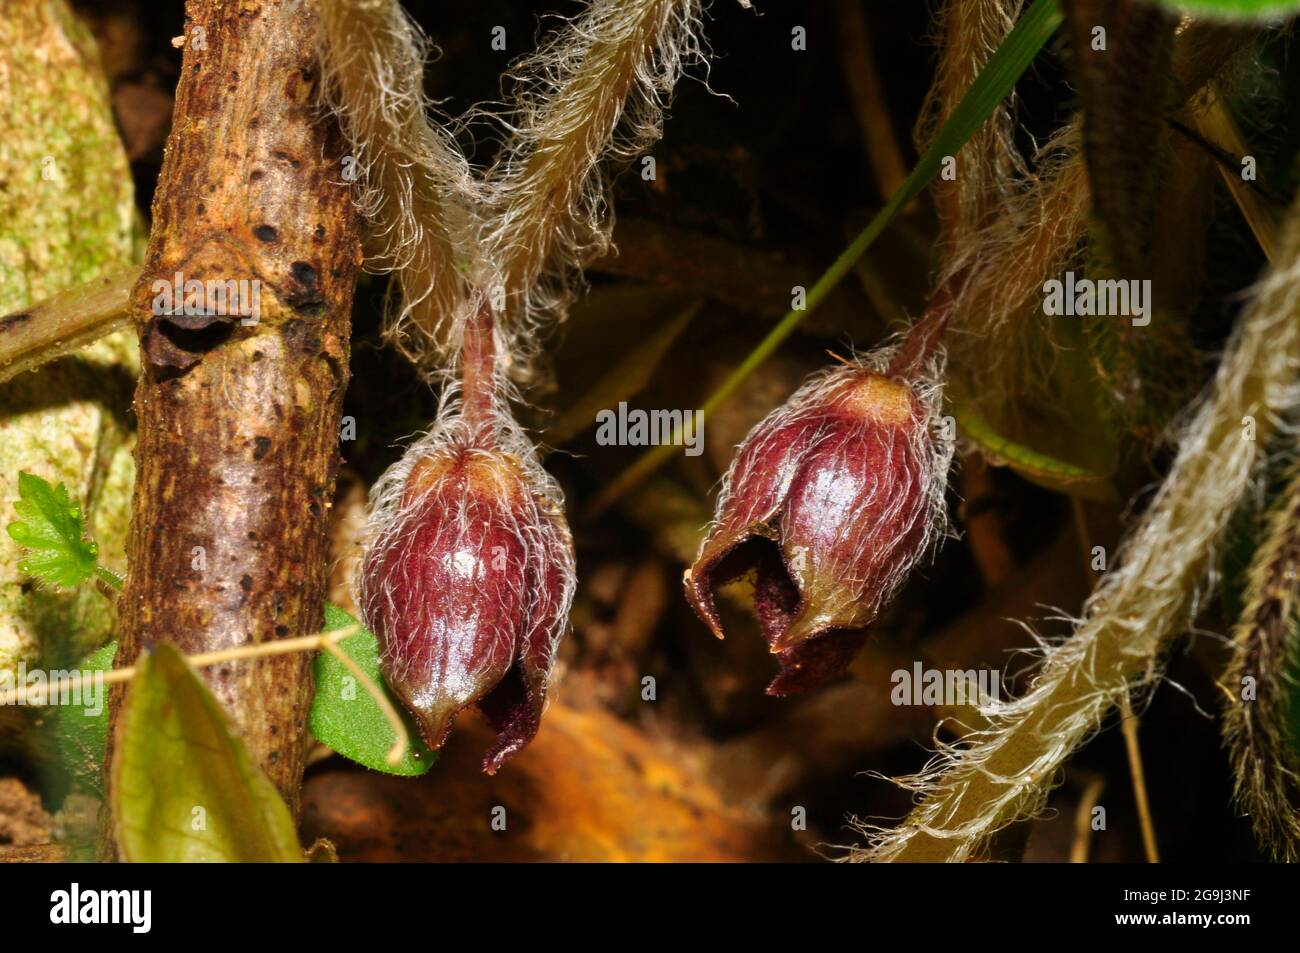 Asarabacca Blume 'Asarum Europaeum', europäischer wilder Ingwer, wilder Stachelrochen und Haselkraut, ist eine blühende Pflanze in der Familie der Geburtswürze Stockfoto